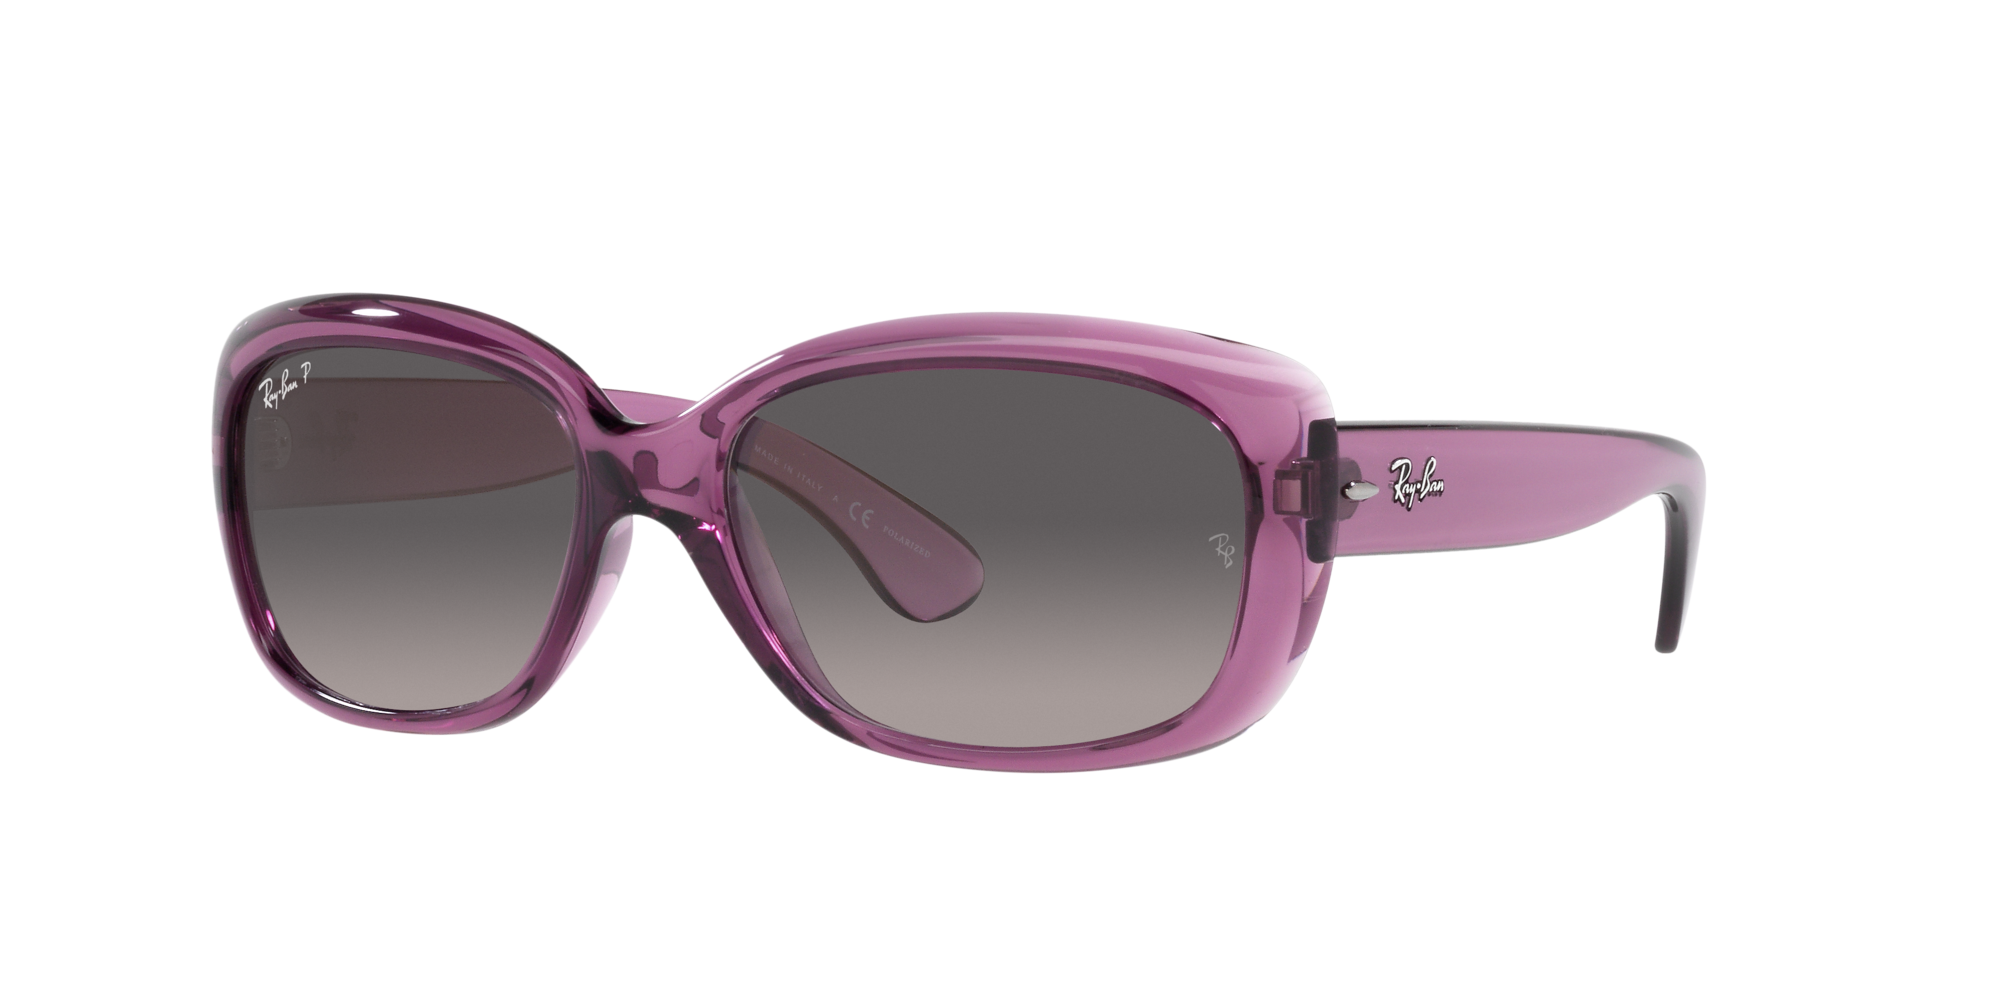 Jackie ohh Ray-Ban Sonnenbrille für Damen in Violett/Transparent RB4101 6591M3 58